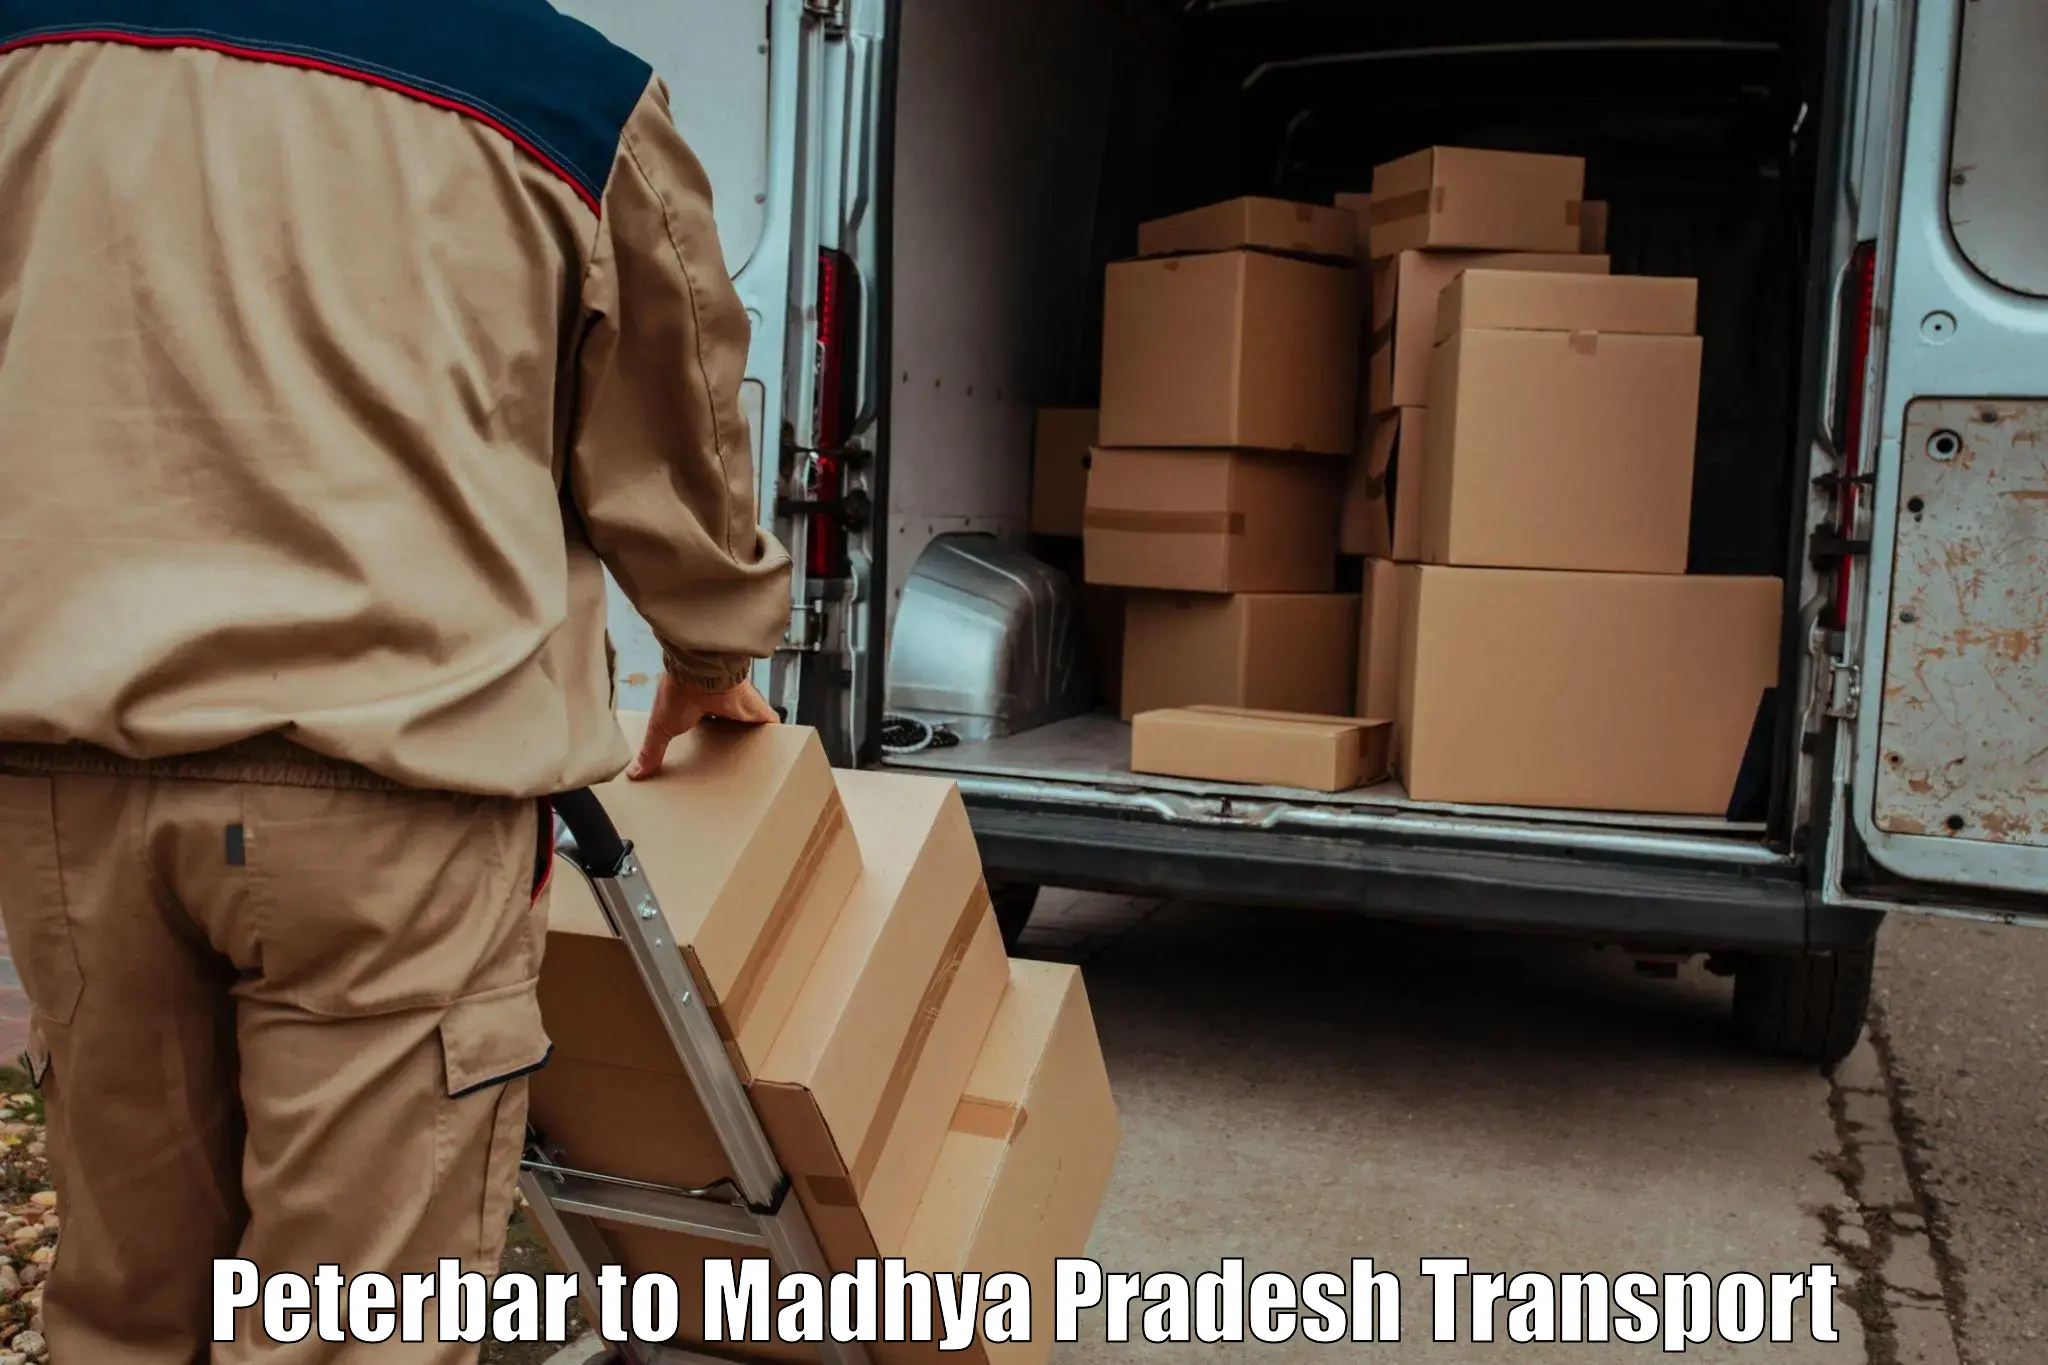 Land transport services Peterbar to Sendhwa